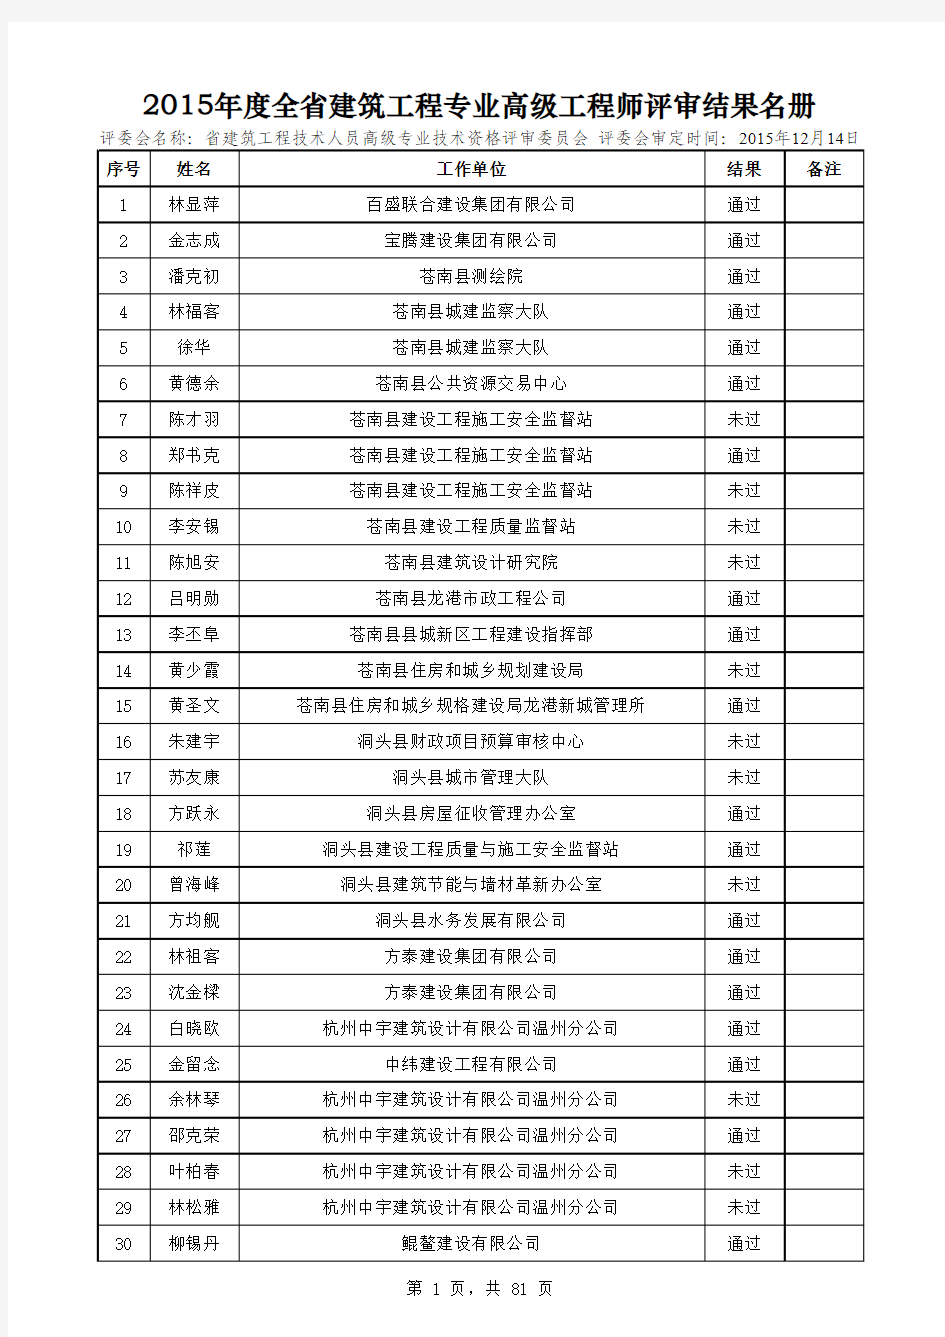 2015年度浙江省建筑工程专业高级工程师评审结果名册